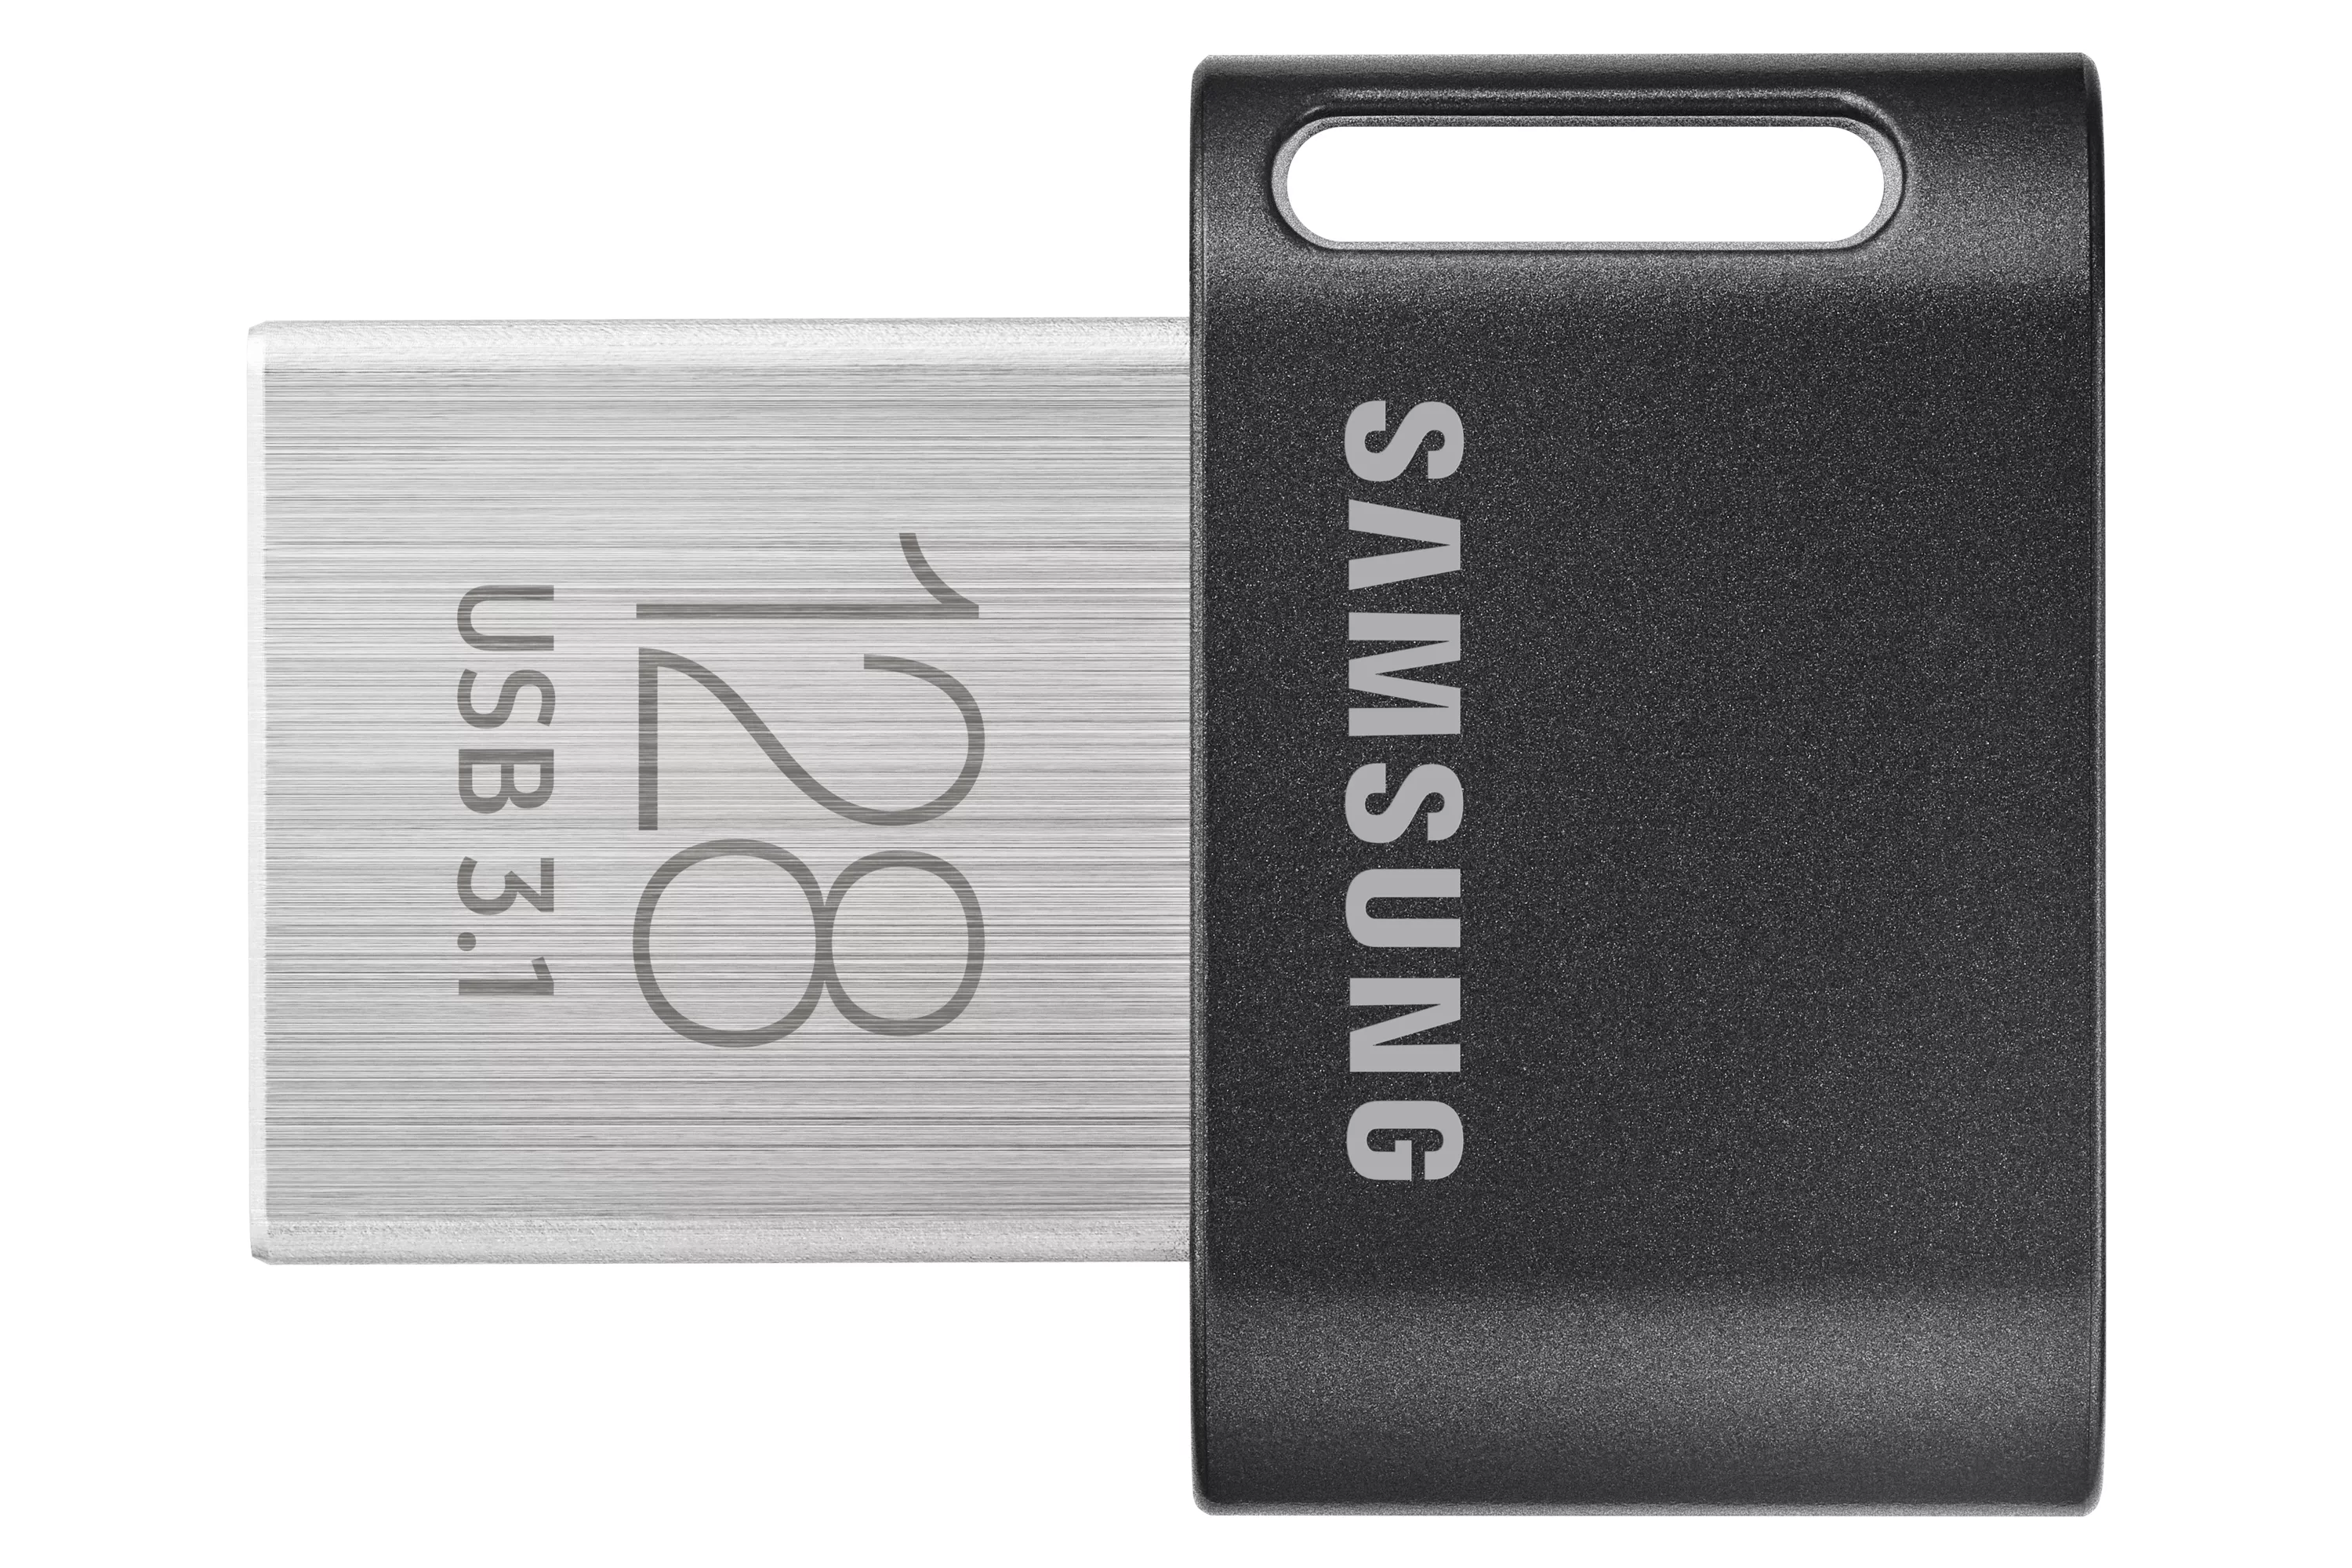 Vente Adaptateur stockage SAMSUNG FIT PLUS 128Go USB 3.1 sur hello RSE